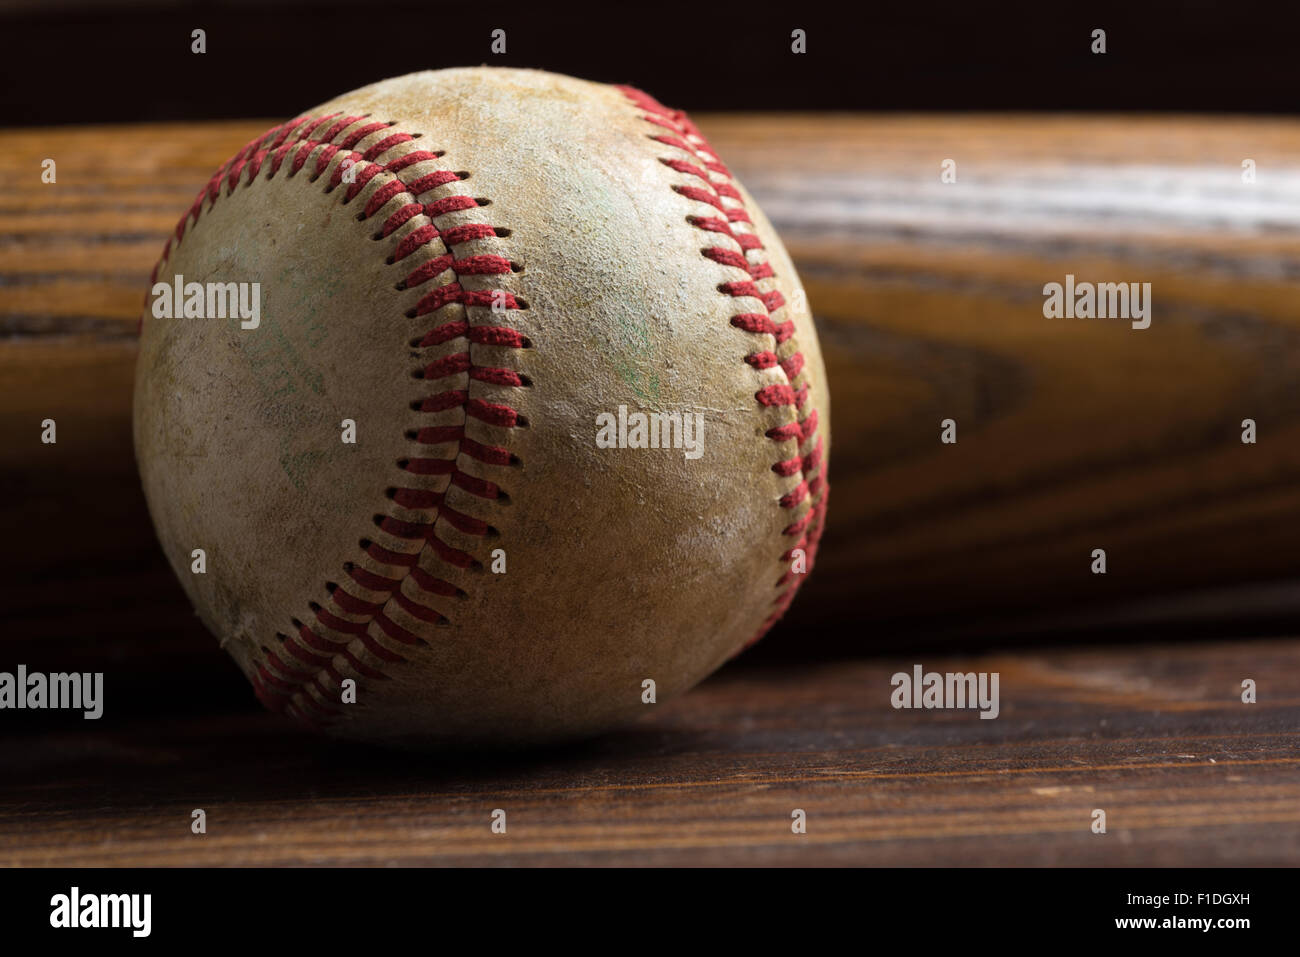 L'équipement de base-ball : batte en bois et balle sur une planche en bois ou un banc arrière-plan Banque D'Images